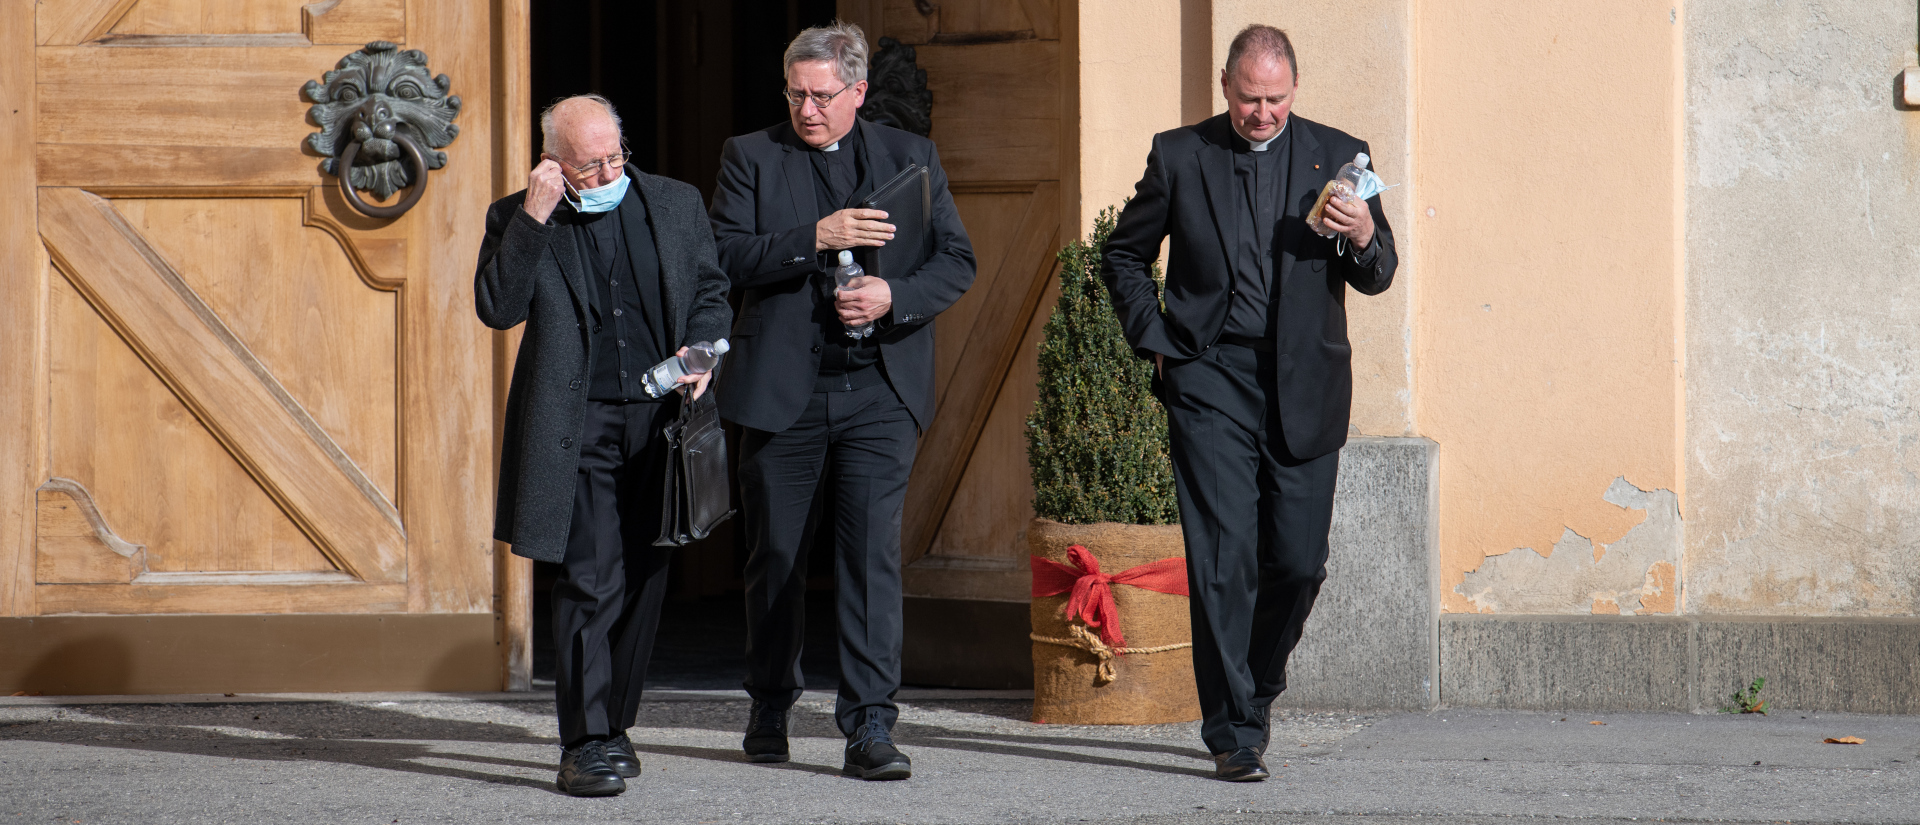 Les 22 chanoines de la cathédrale de Coire ont refusé la liste proposée par le pape François. Et maintenant? | © Manuela Matt